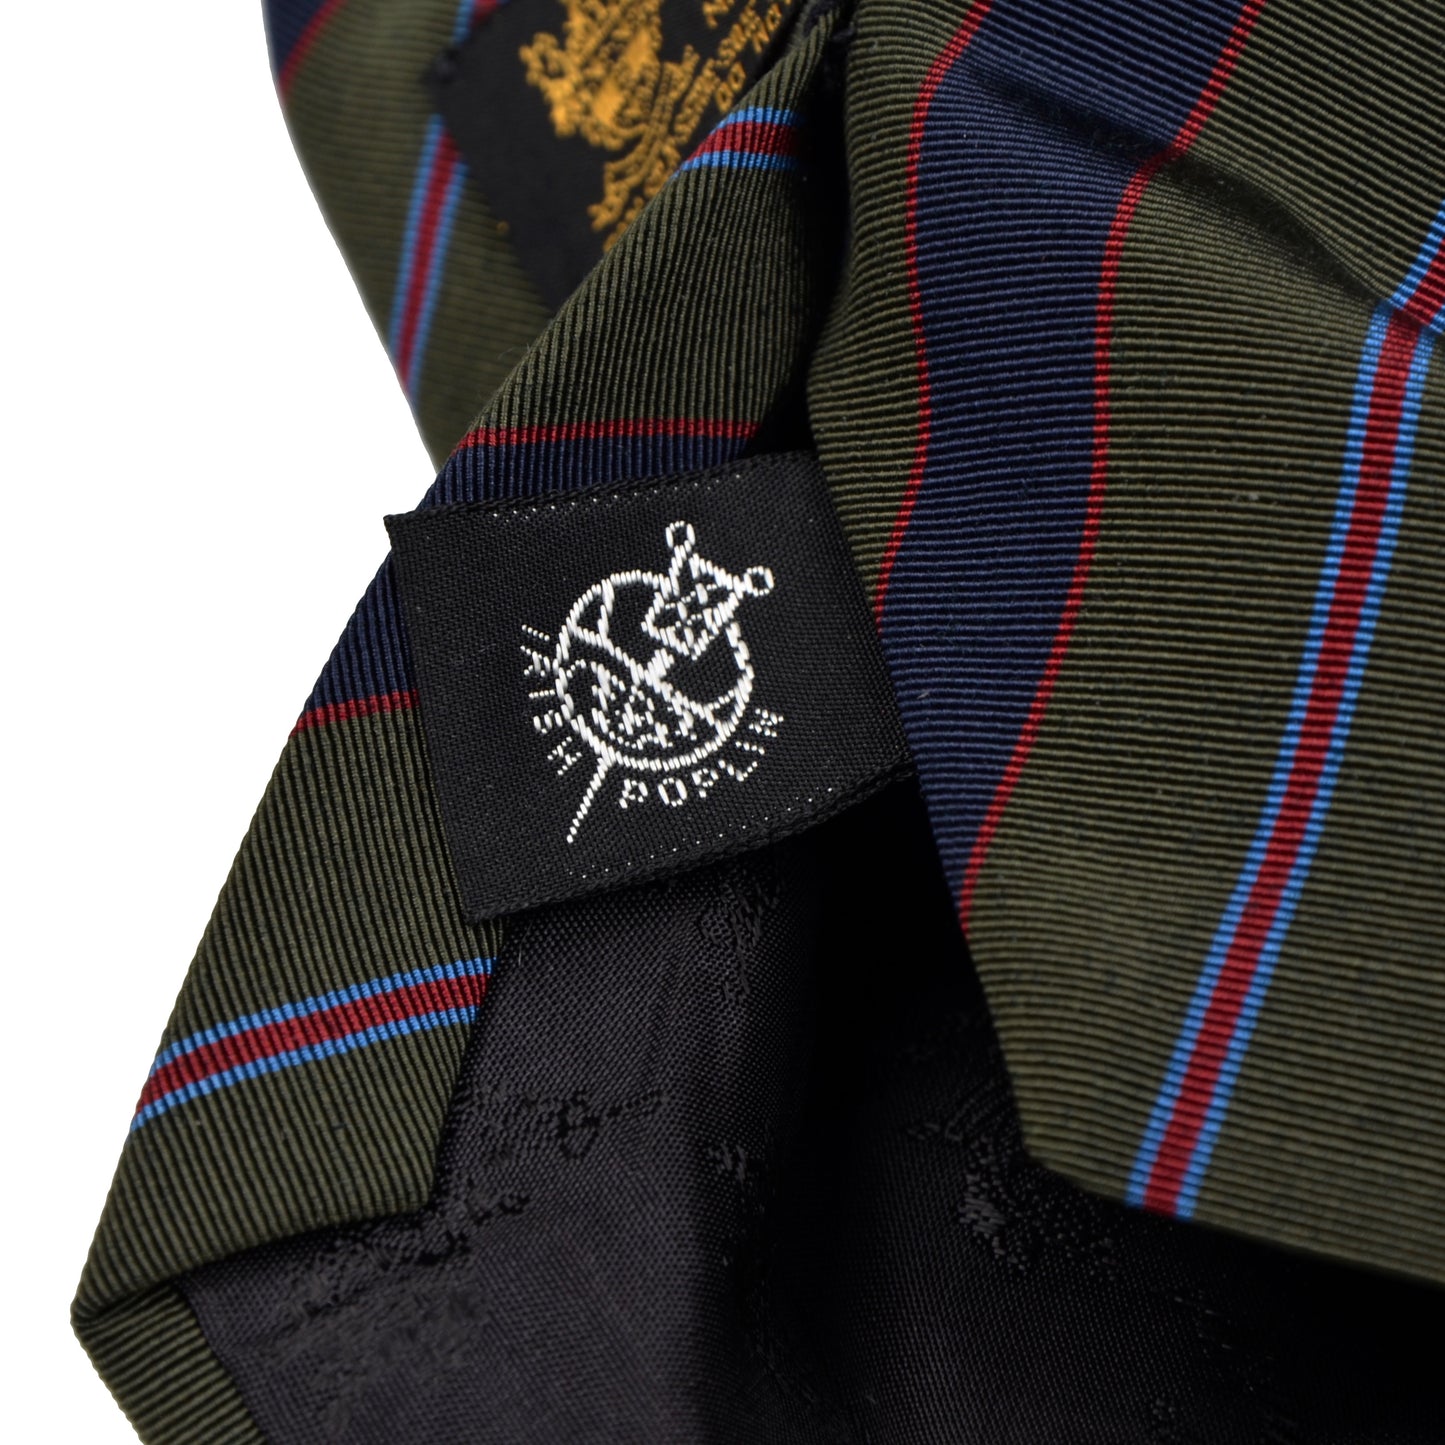 Atkinsons Irish Poplin Tie Wool/Silk - Green/Blue/Red Stripe